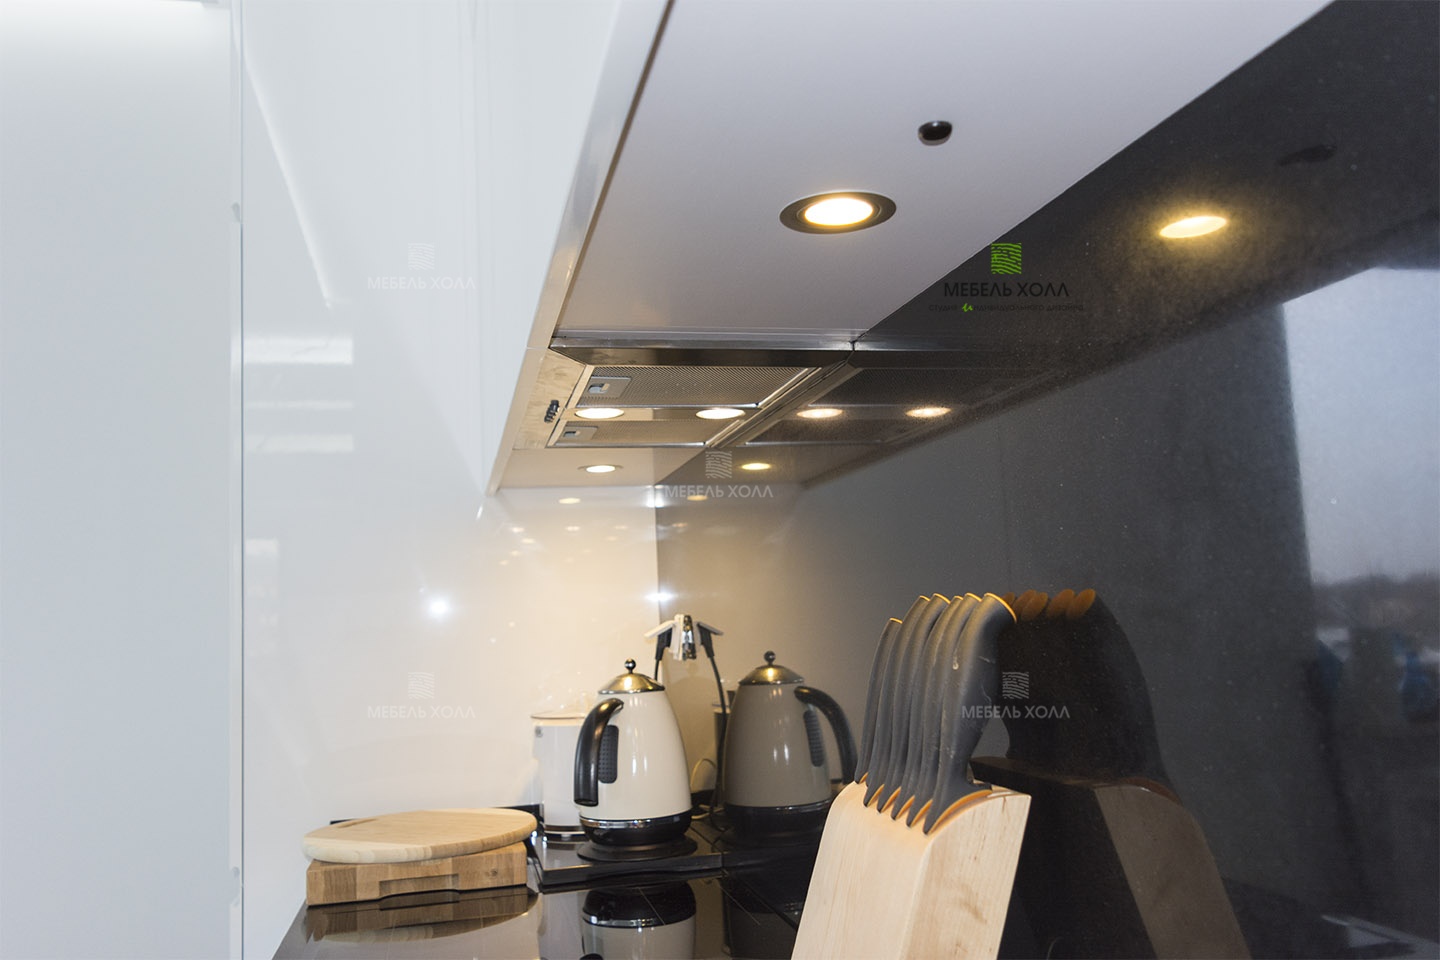 Современная кухня в стиле минимализм из белого глянцевого МДФ с интегрированными ручками, столешница из керамогранита, фурнитура Blum